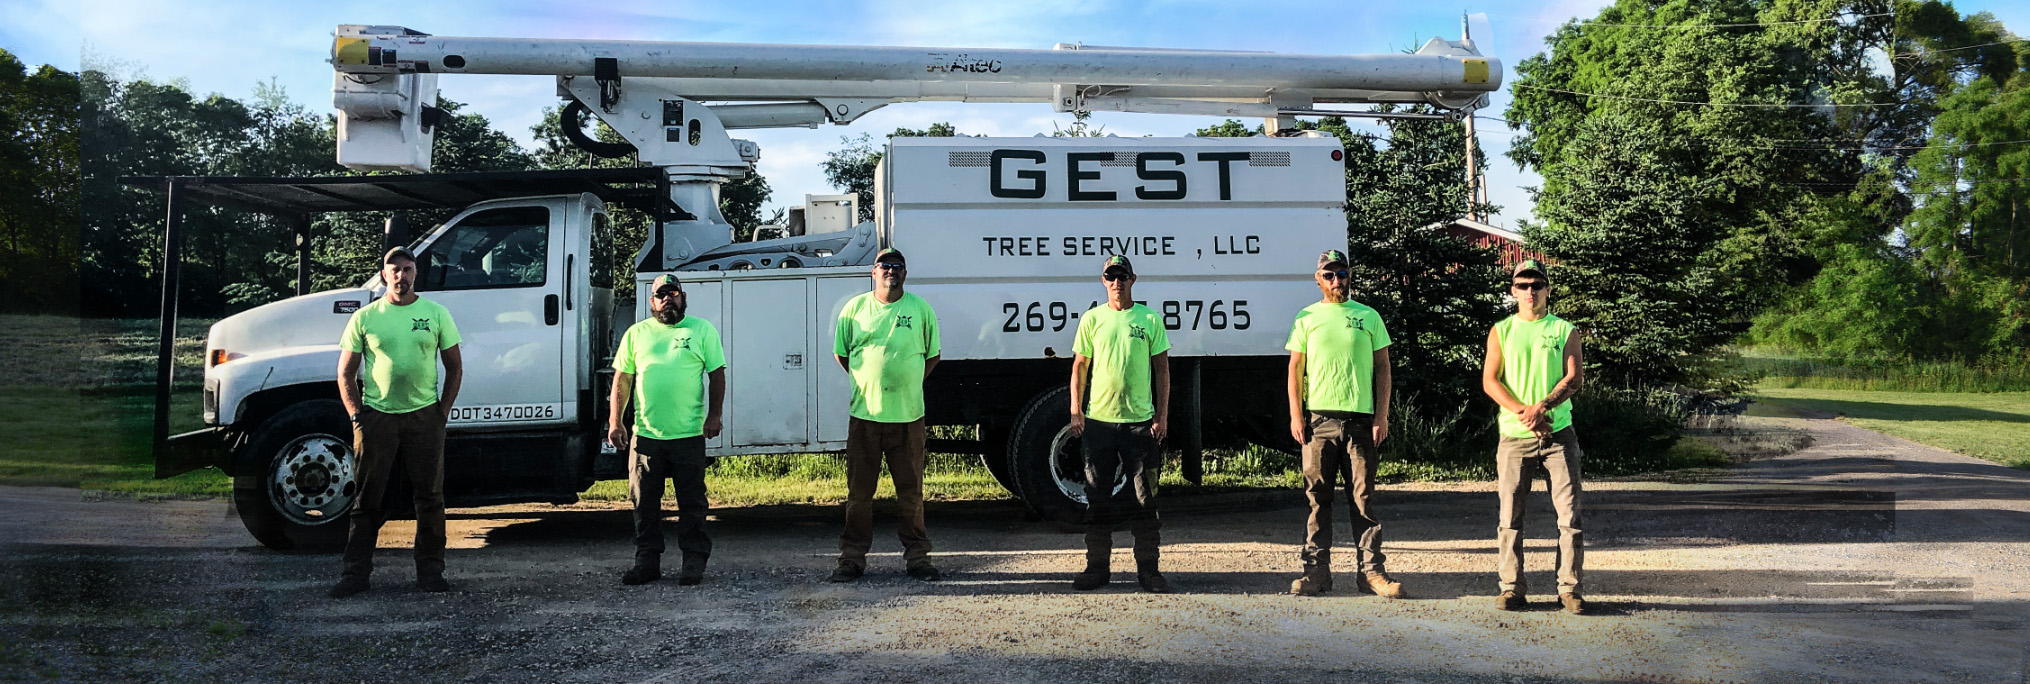 Gest Pro Tree Service reviews | 26460 Banker St - Sturgis MI